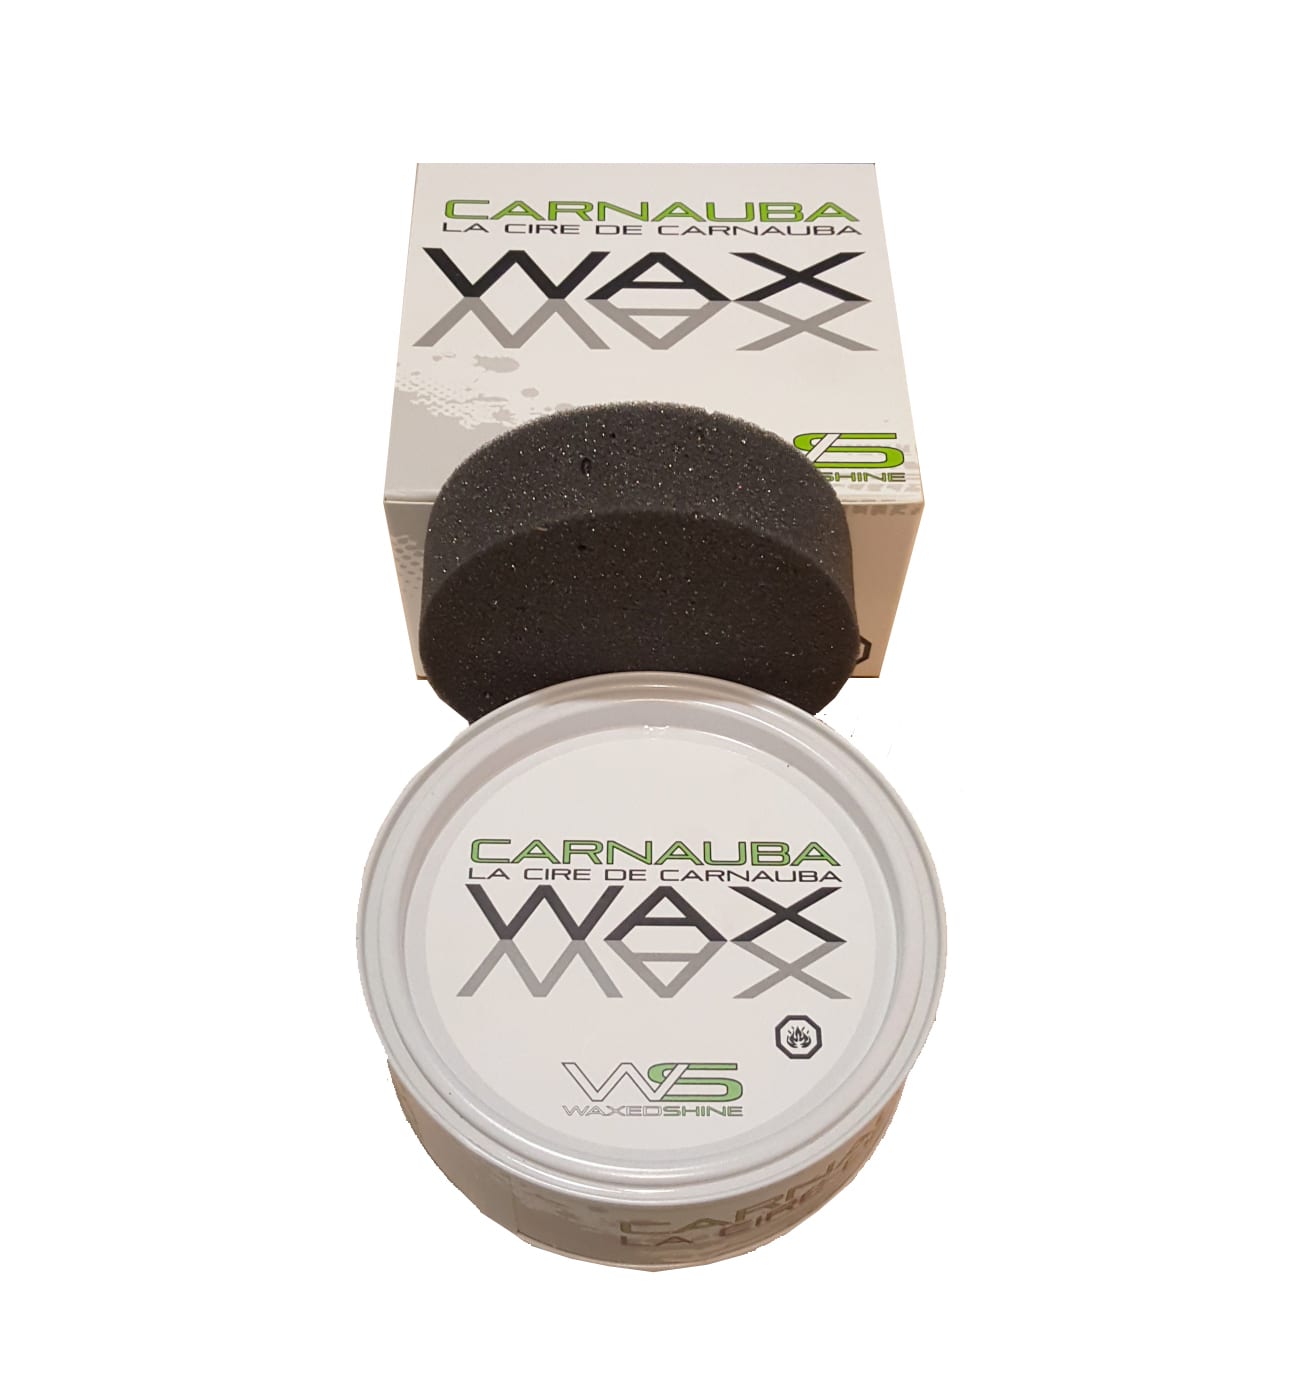 Carnauba Wax Hand Made 40% - Waxedshine Car Care